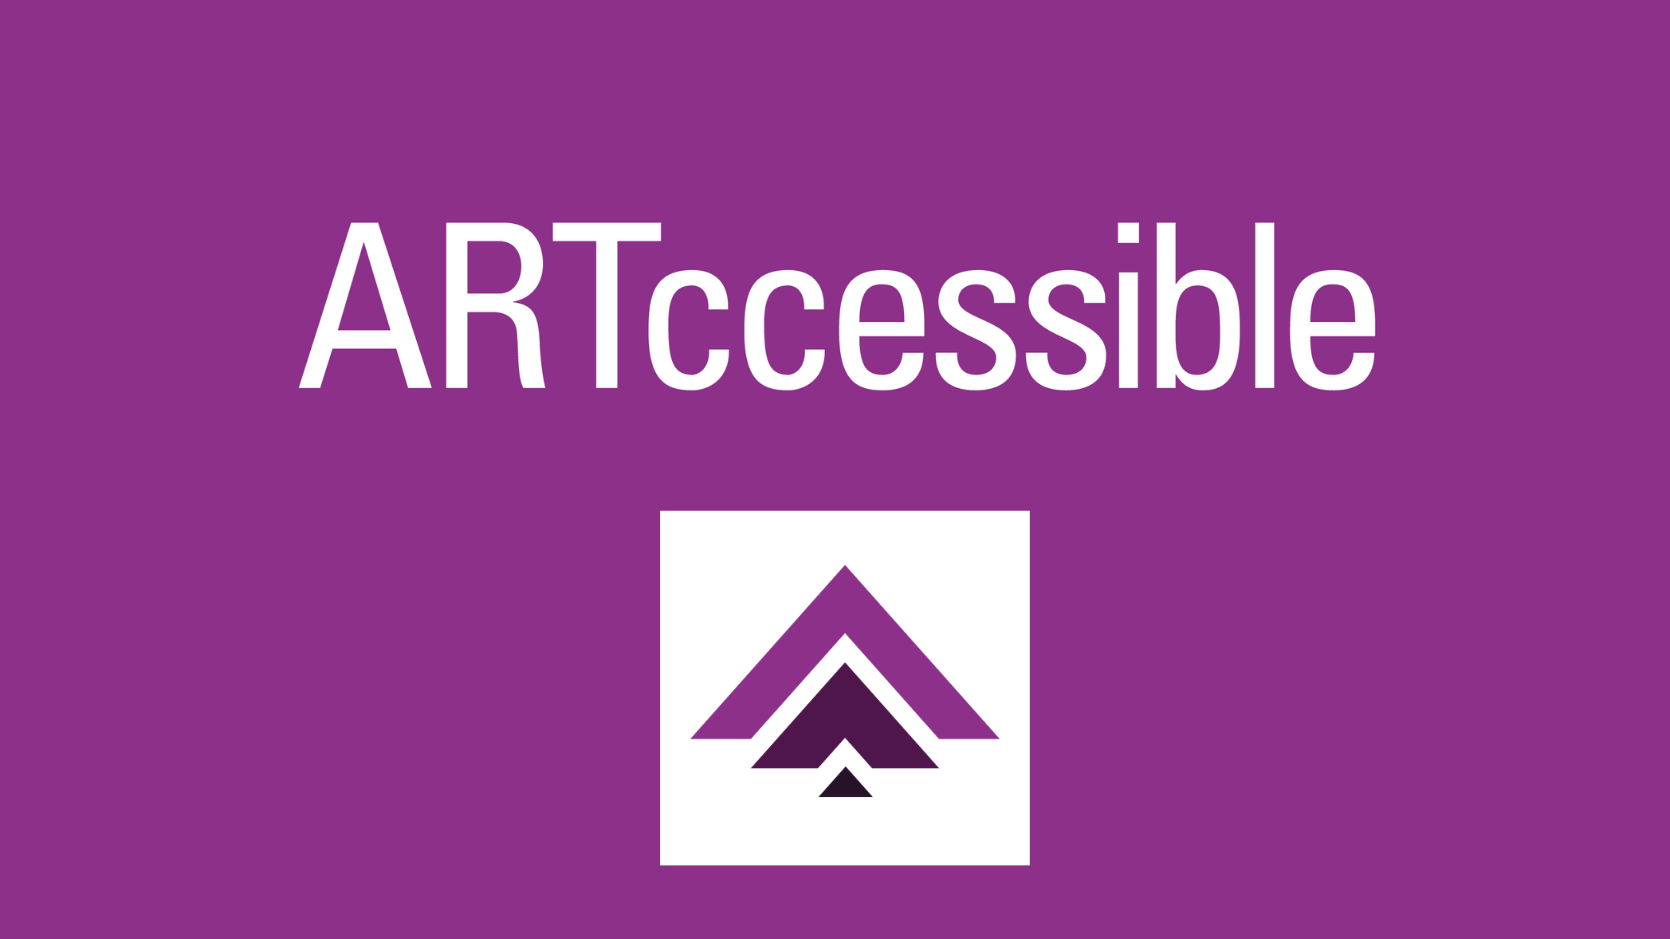 ARTcessible logo, three upward arrows in shades of purple